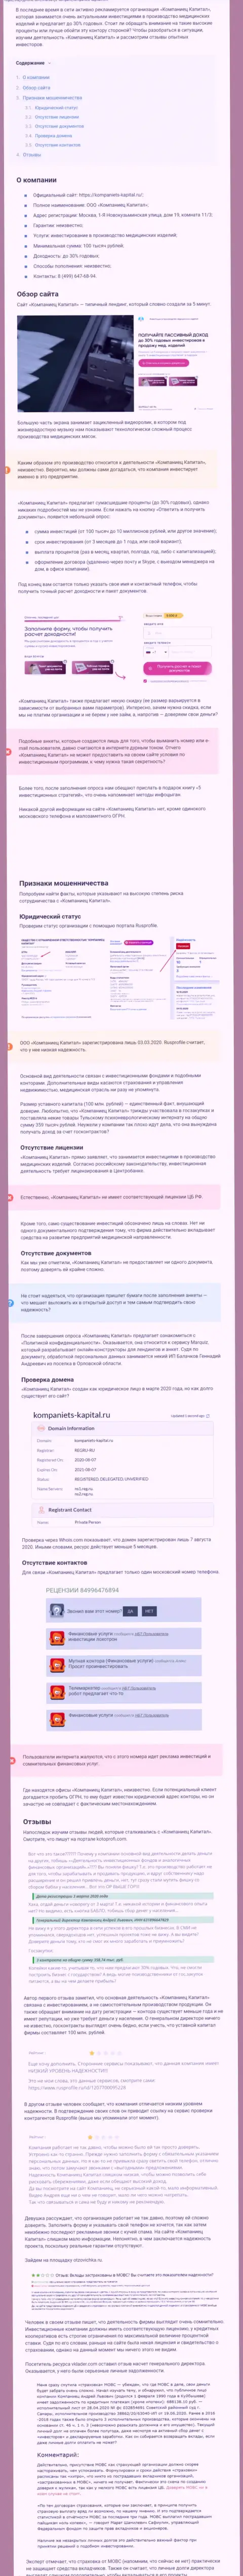 В интернет сети не очень лестно говорят об Kompaniets-Capital Ru (обзор компании)